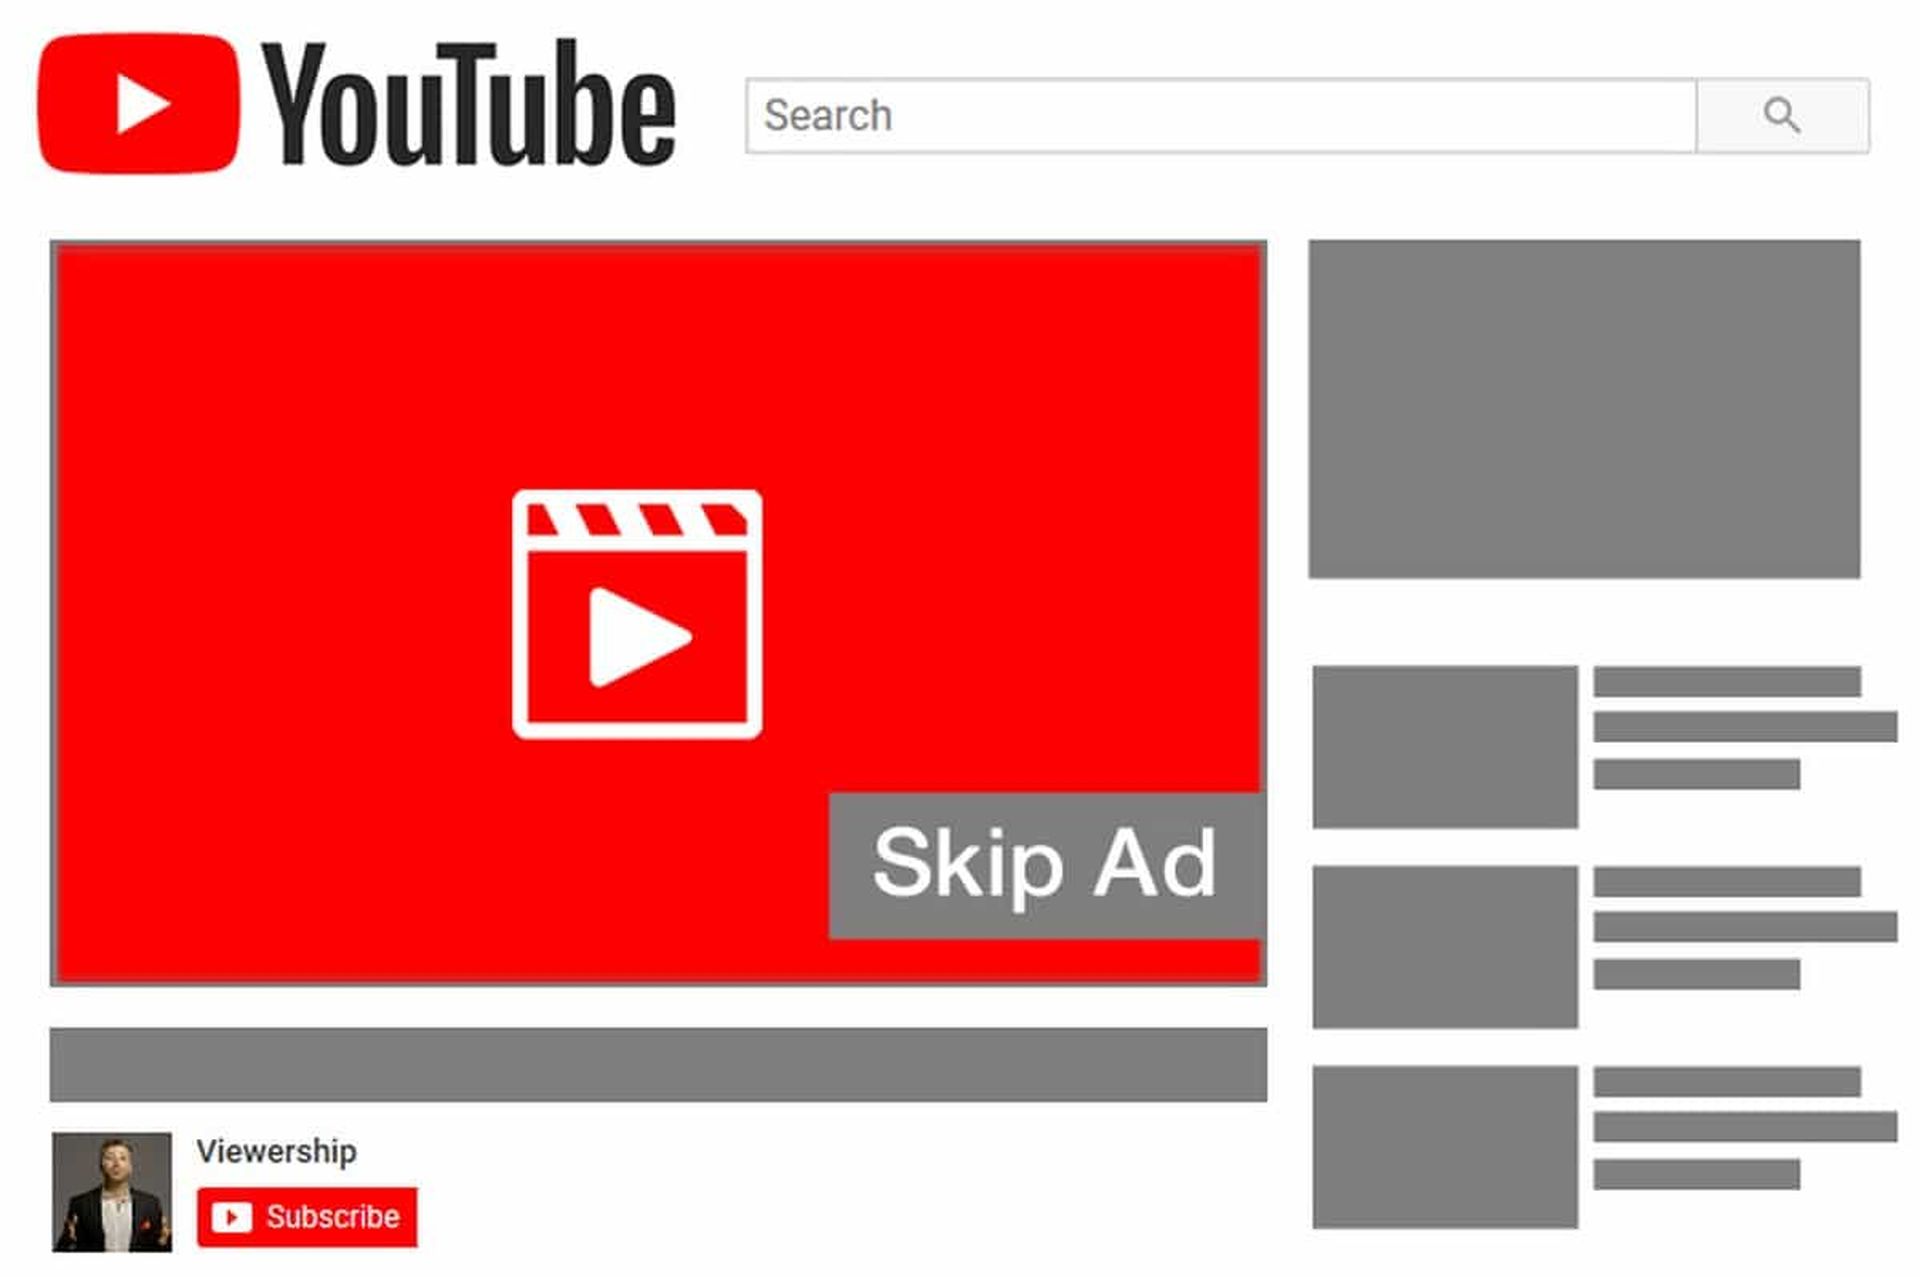 Bloqueo de anuncios de bloqueo de YouTube 